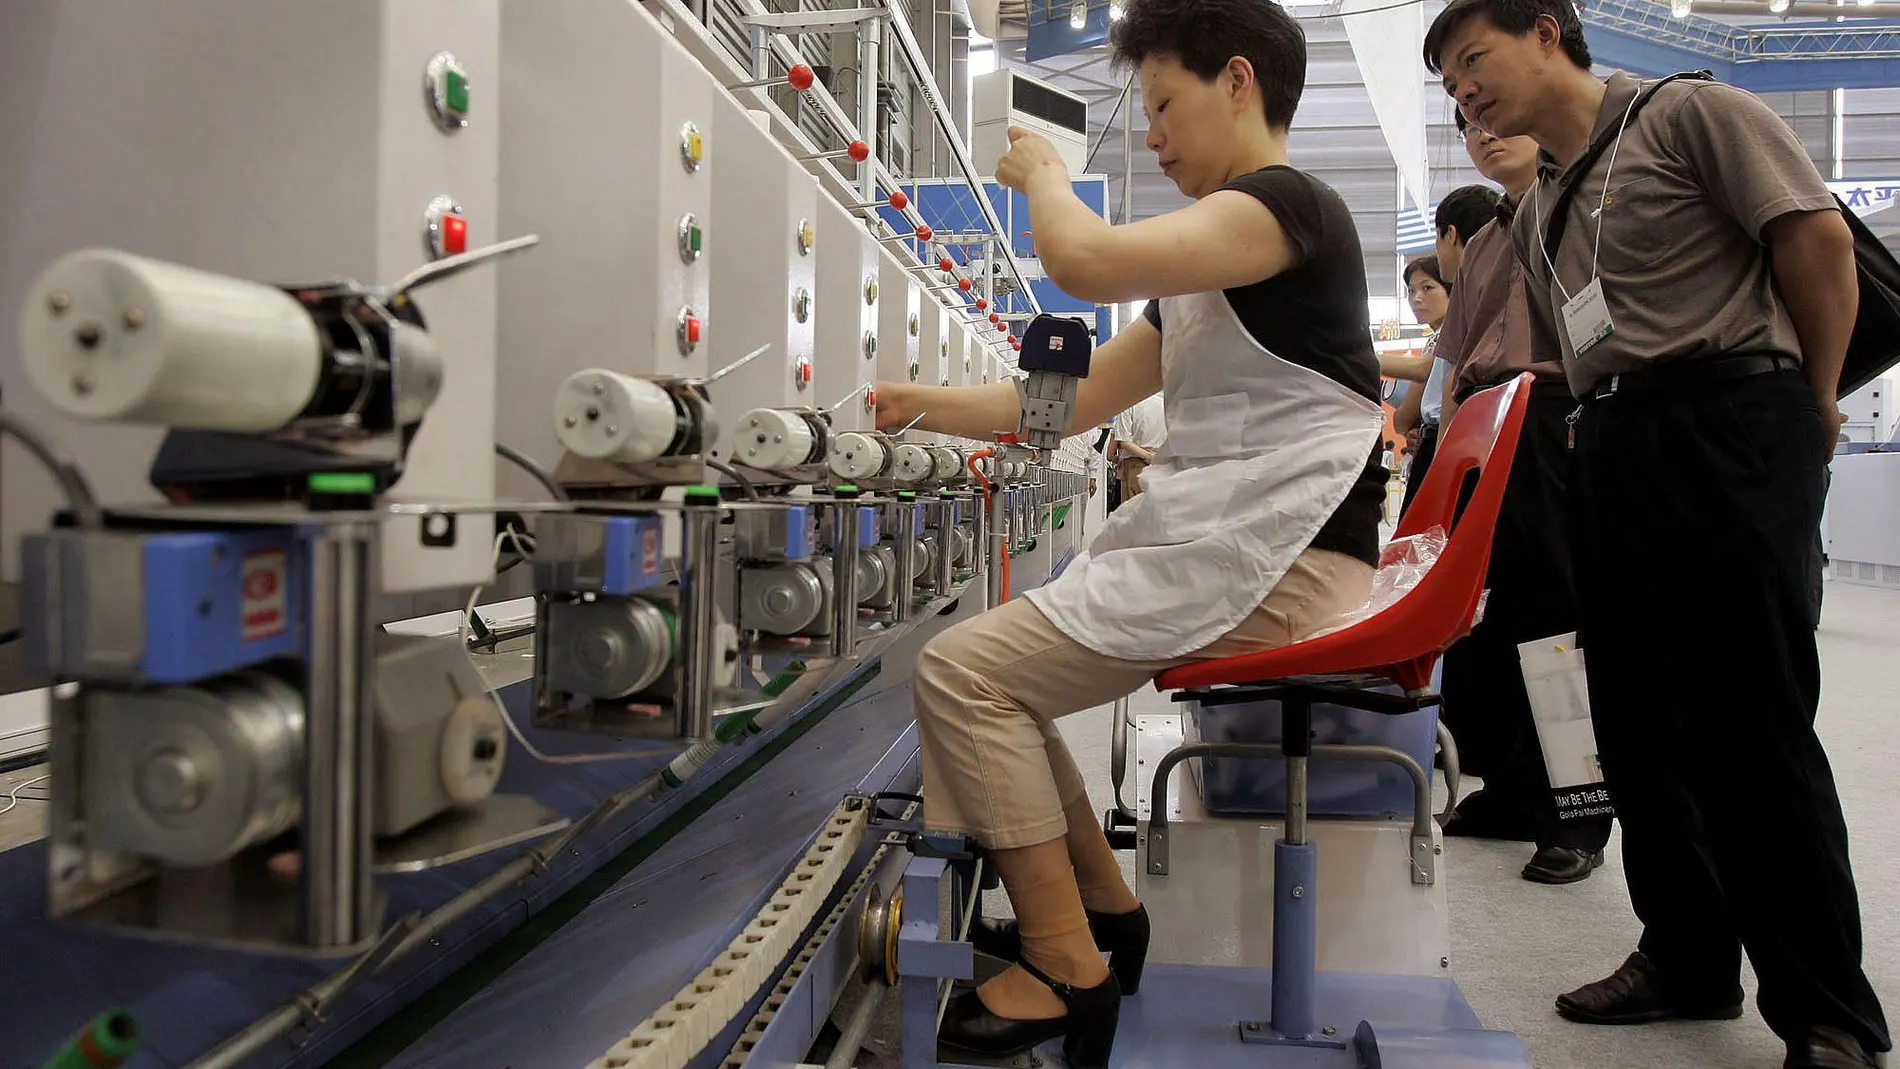 Una mujer trabajando en una fábrica china